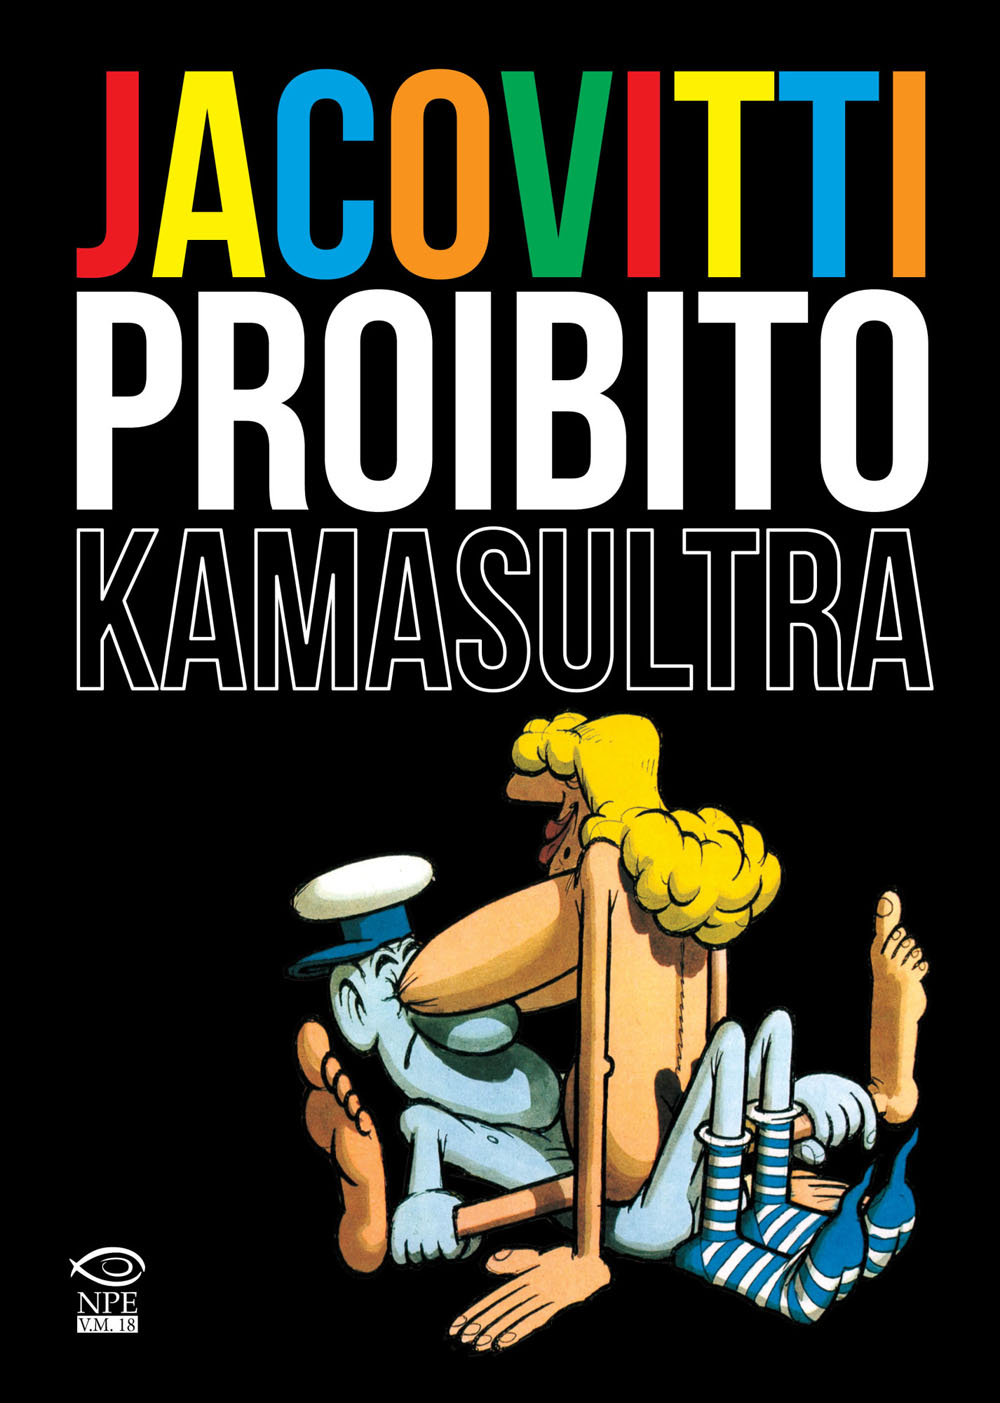 Libri Benito Jacovitti - Jacovitti Proibito. Kamasultra NUOVO SIGILLATO, EDIZIONE DEL 20/12/2015 SUBITO DISPONIBILE